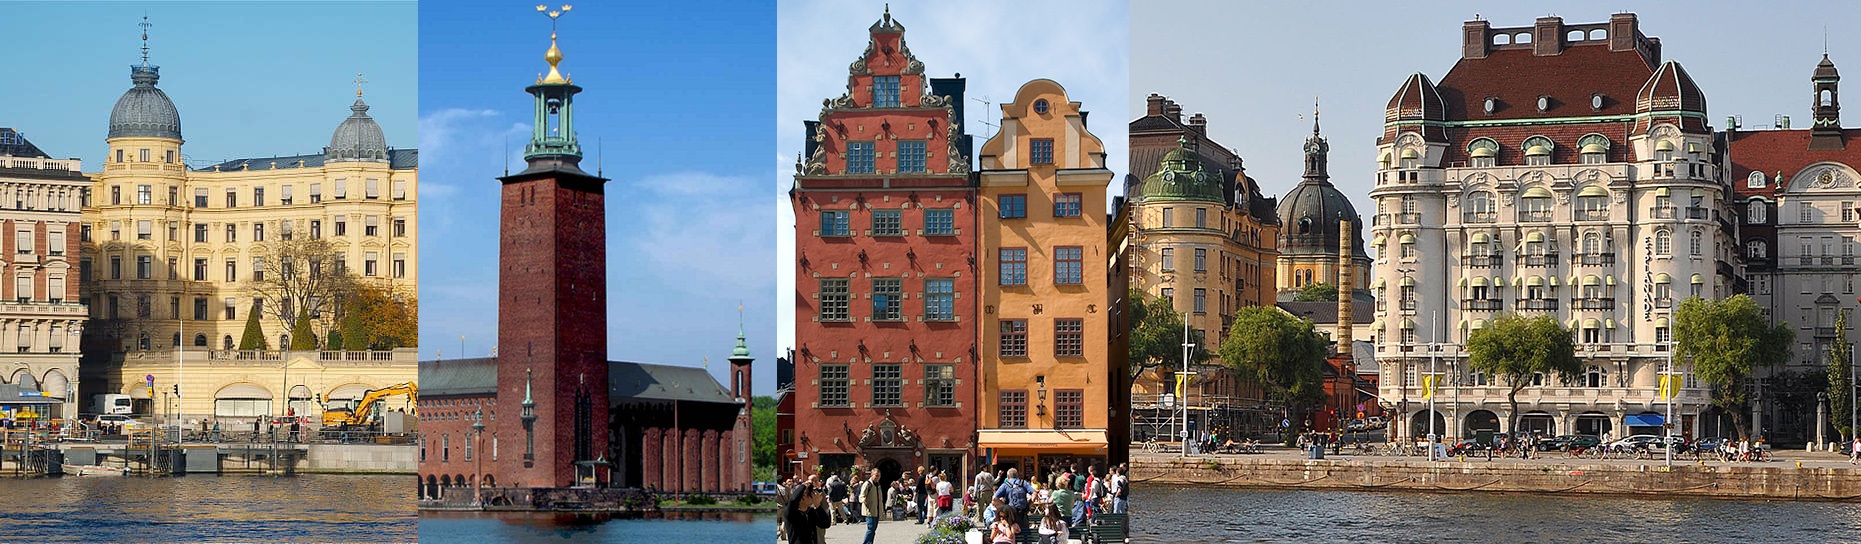 Lista - vilka är Stockholms vackraste byggnader?